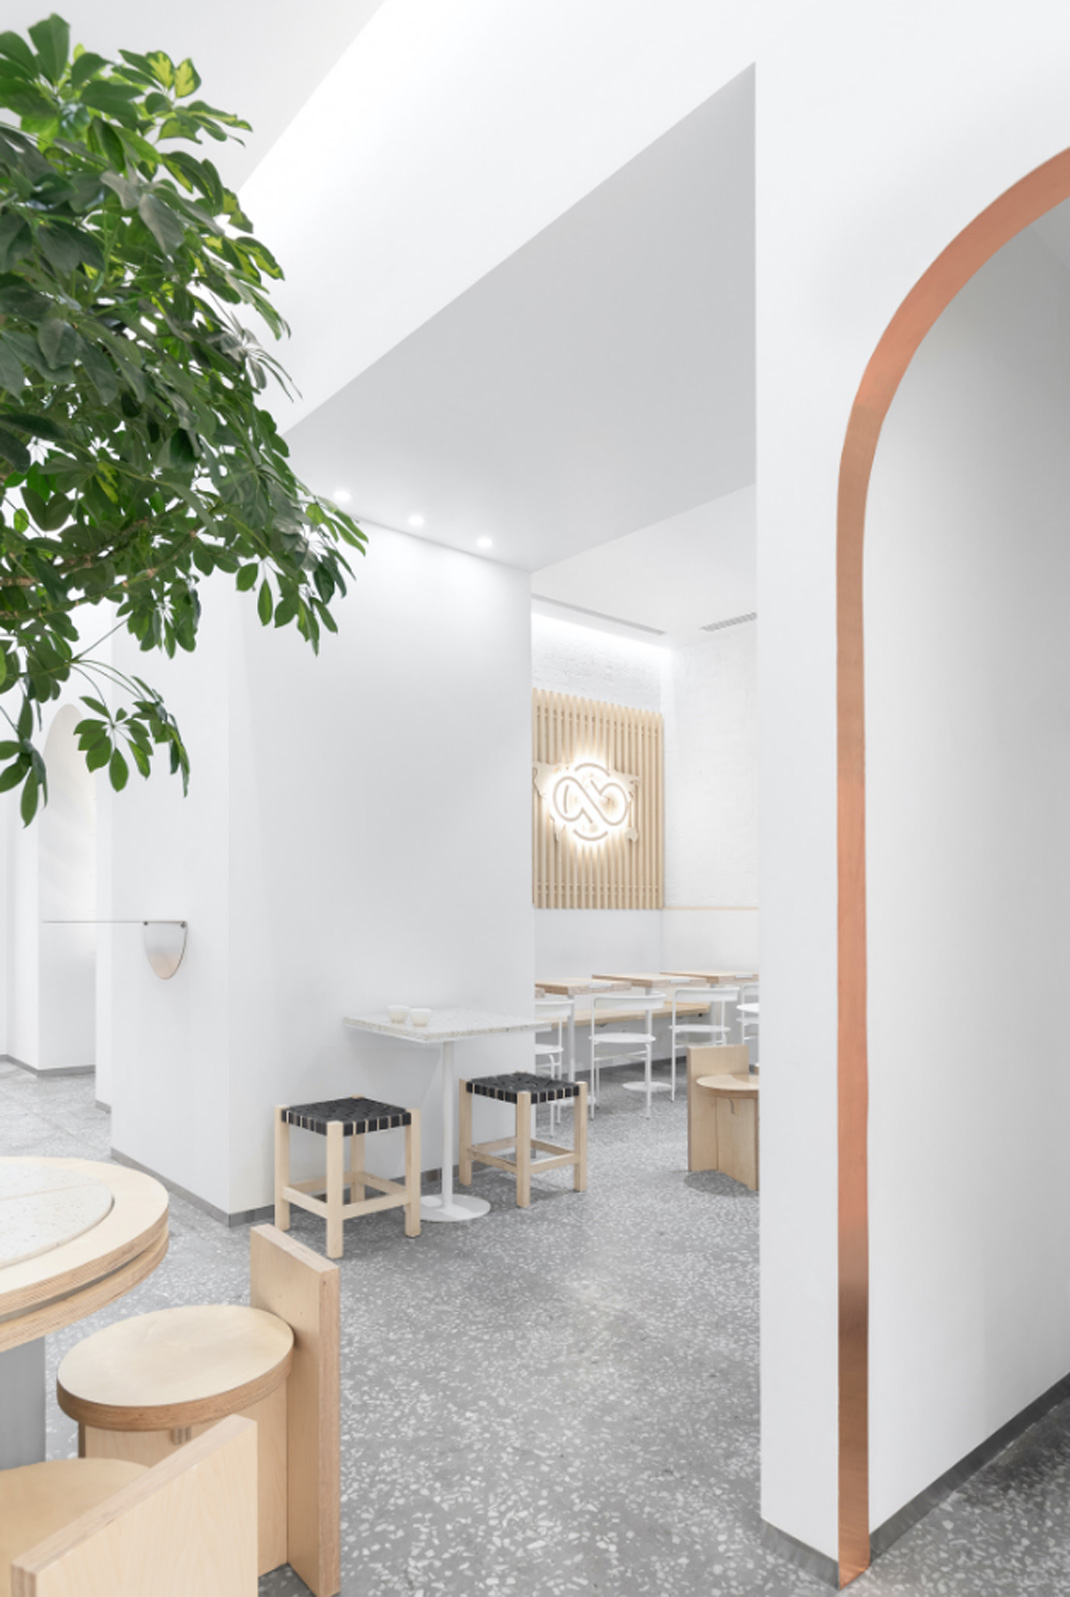 ABC咖啡烘焙机 俄罗斯 咖啡店 极简主义 日本设计 白色 logo设计 vi设计 空间设计